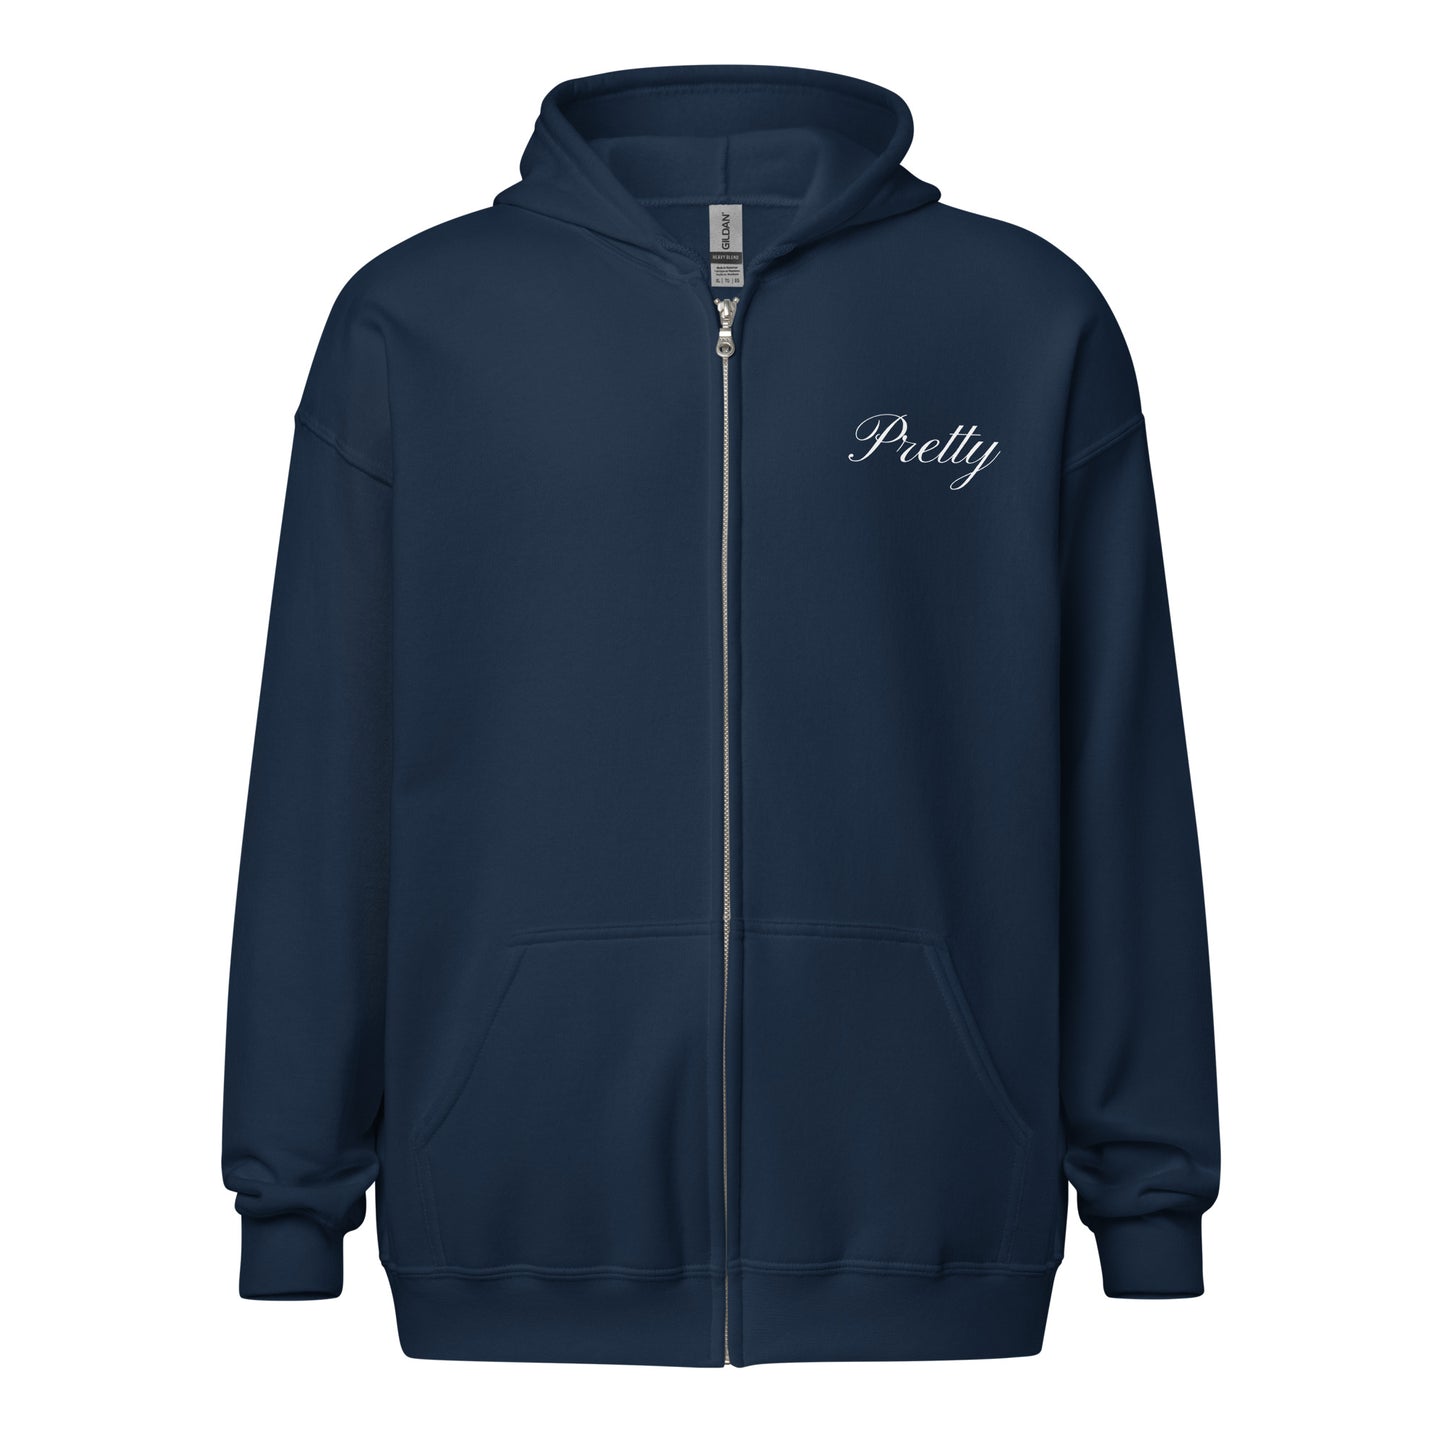 Marla Aerodyne America zip up hoodie